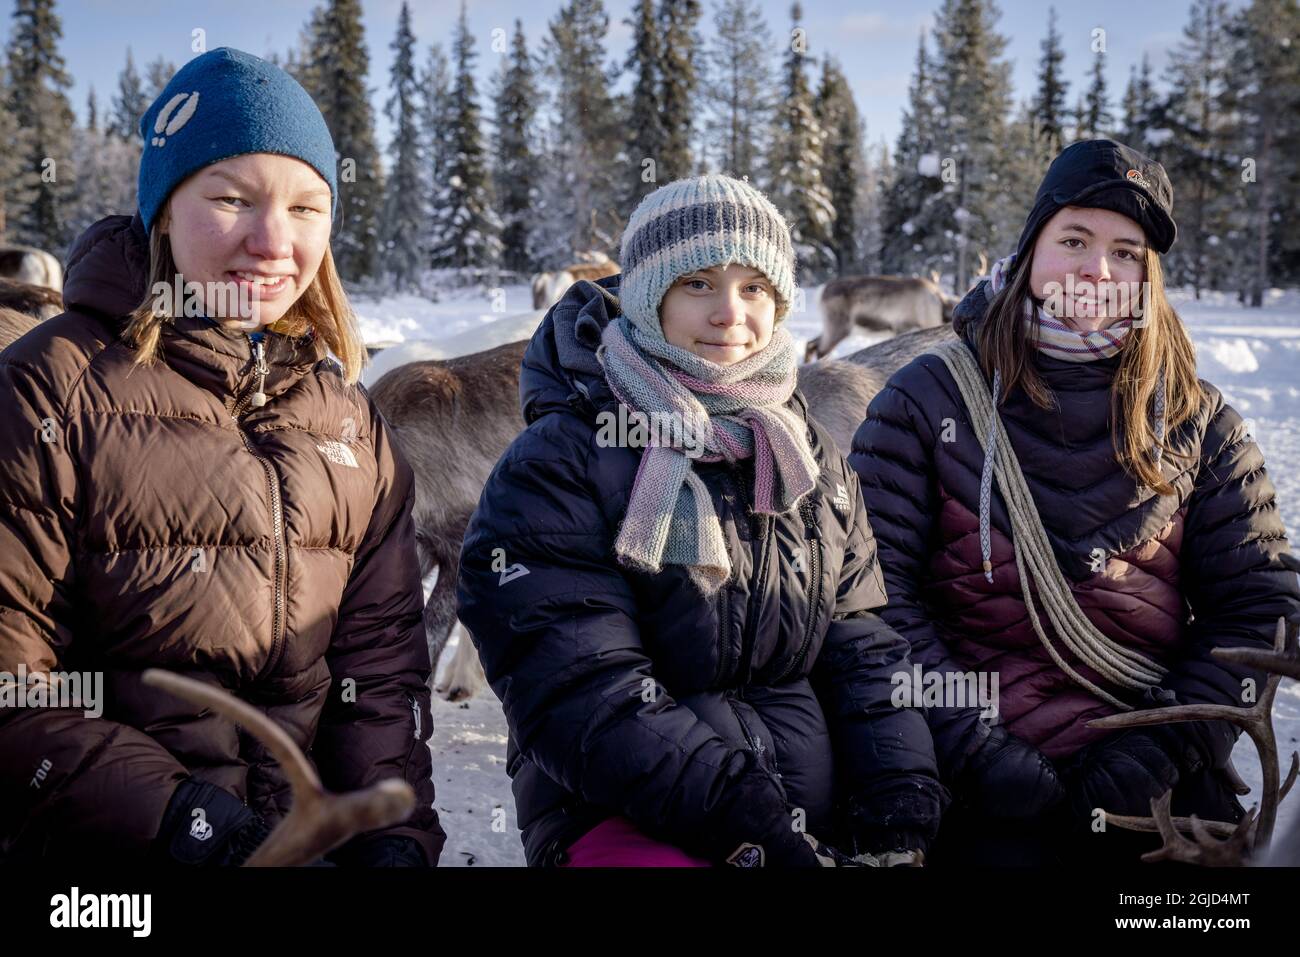 PORJUS 20200205 l'attivista svedese per il clima Greta Thunberg (L) e le donne locali lapp Sanna Vannar e Julia Rensberg, visitano un sito di protezione delle renne a Projus, nel nord della Svezia, il 05 febbraio 2020. Foto: Carl-Johan Utsi / TT / code 11733 *** BETALBILD *** Foto Stock